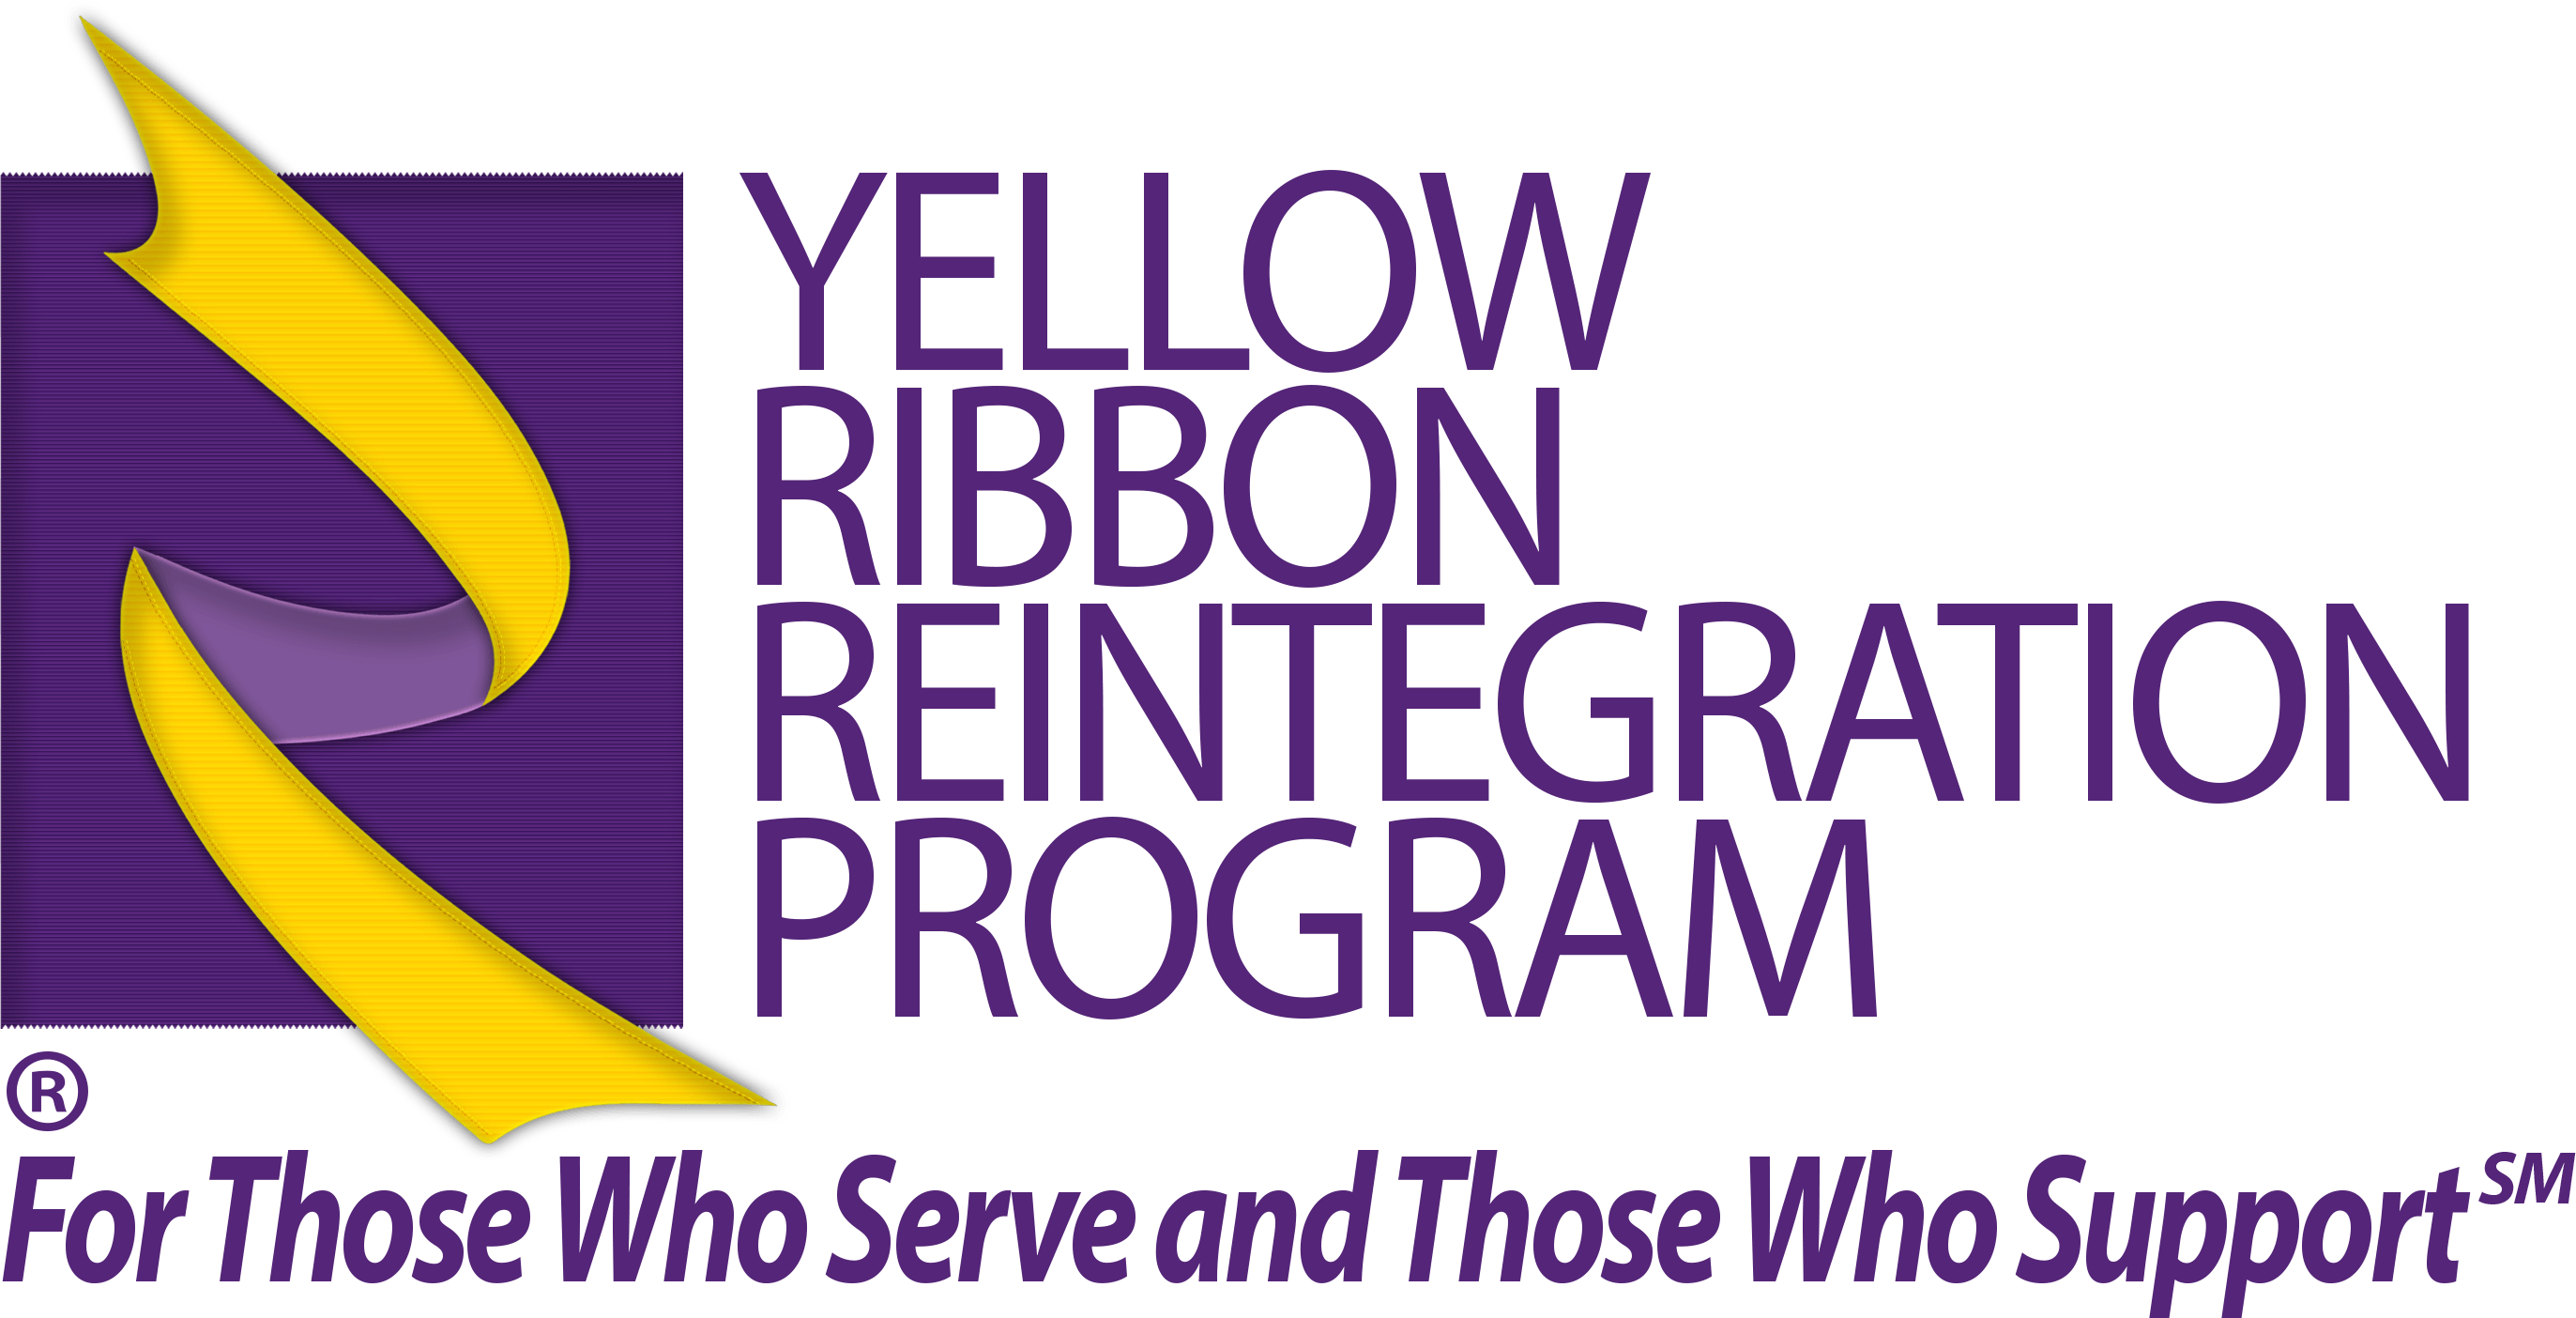 Yellow Ribbon Logo - Yellow Ribbon Reintegration Program Logo with Tagline.png